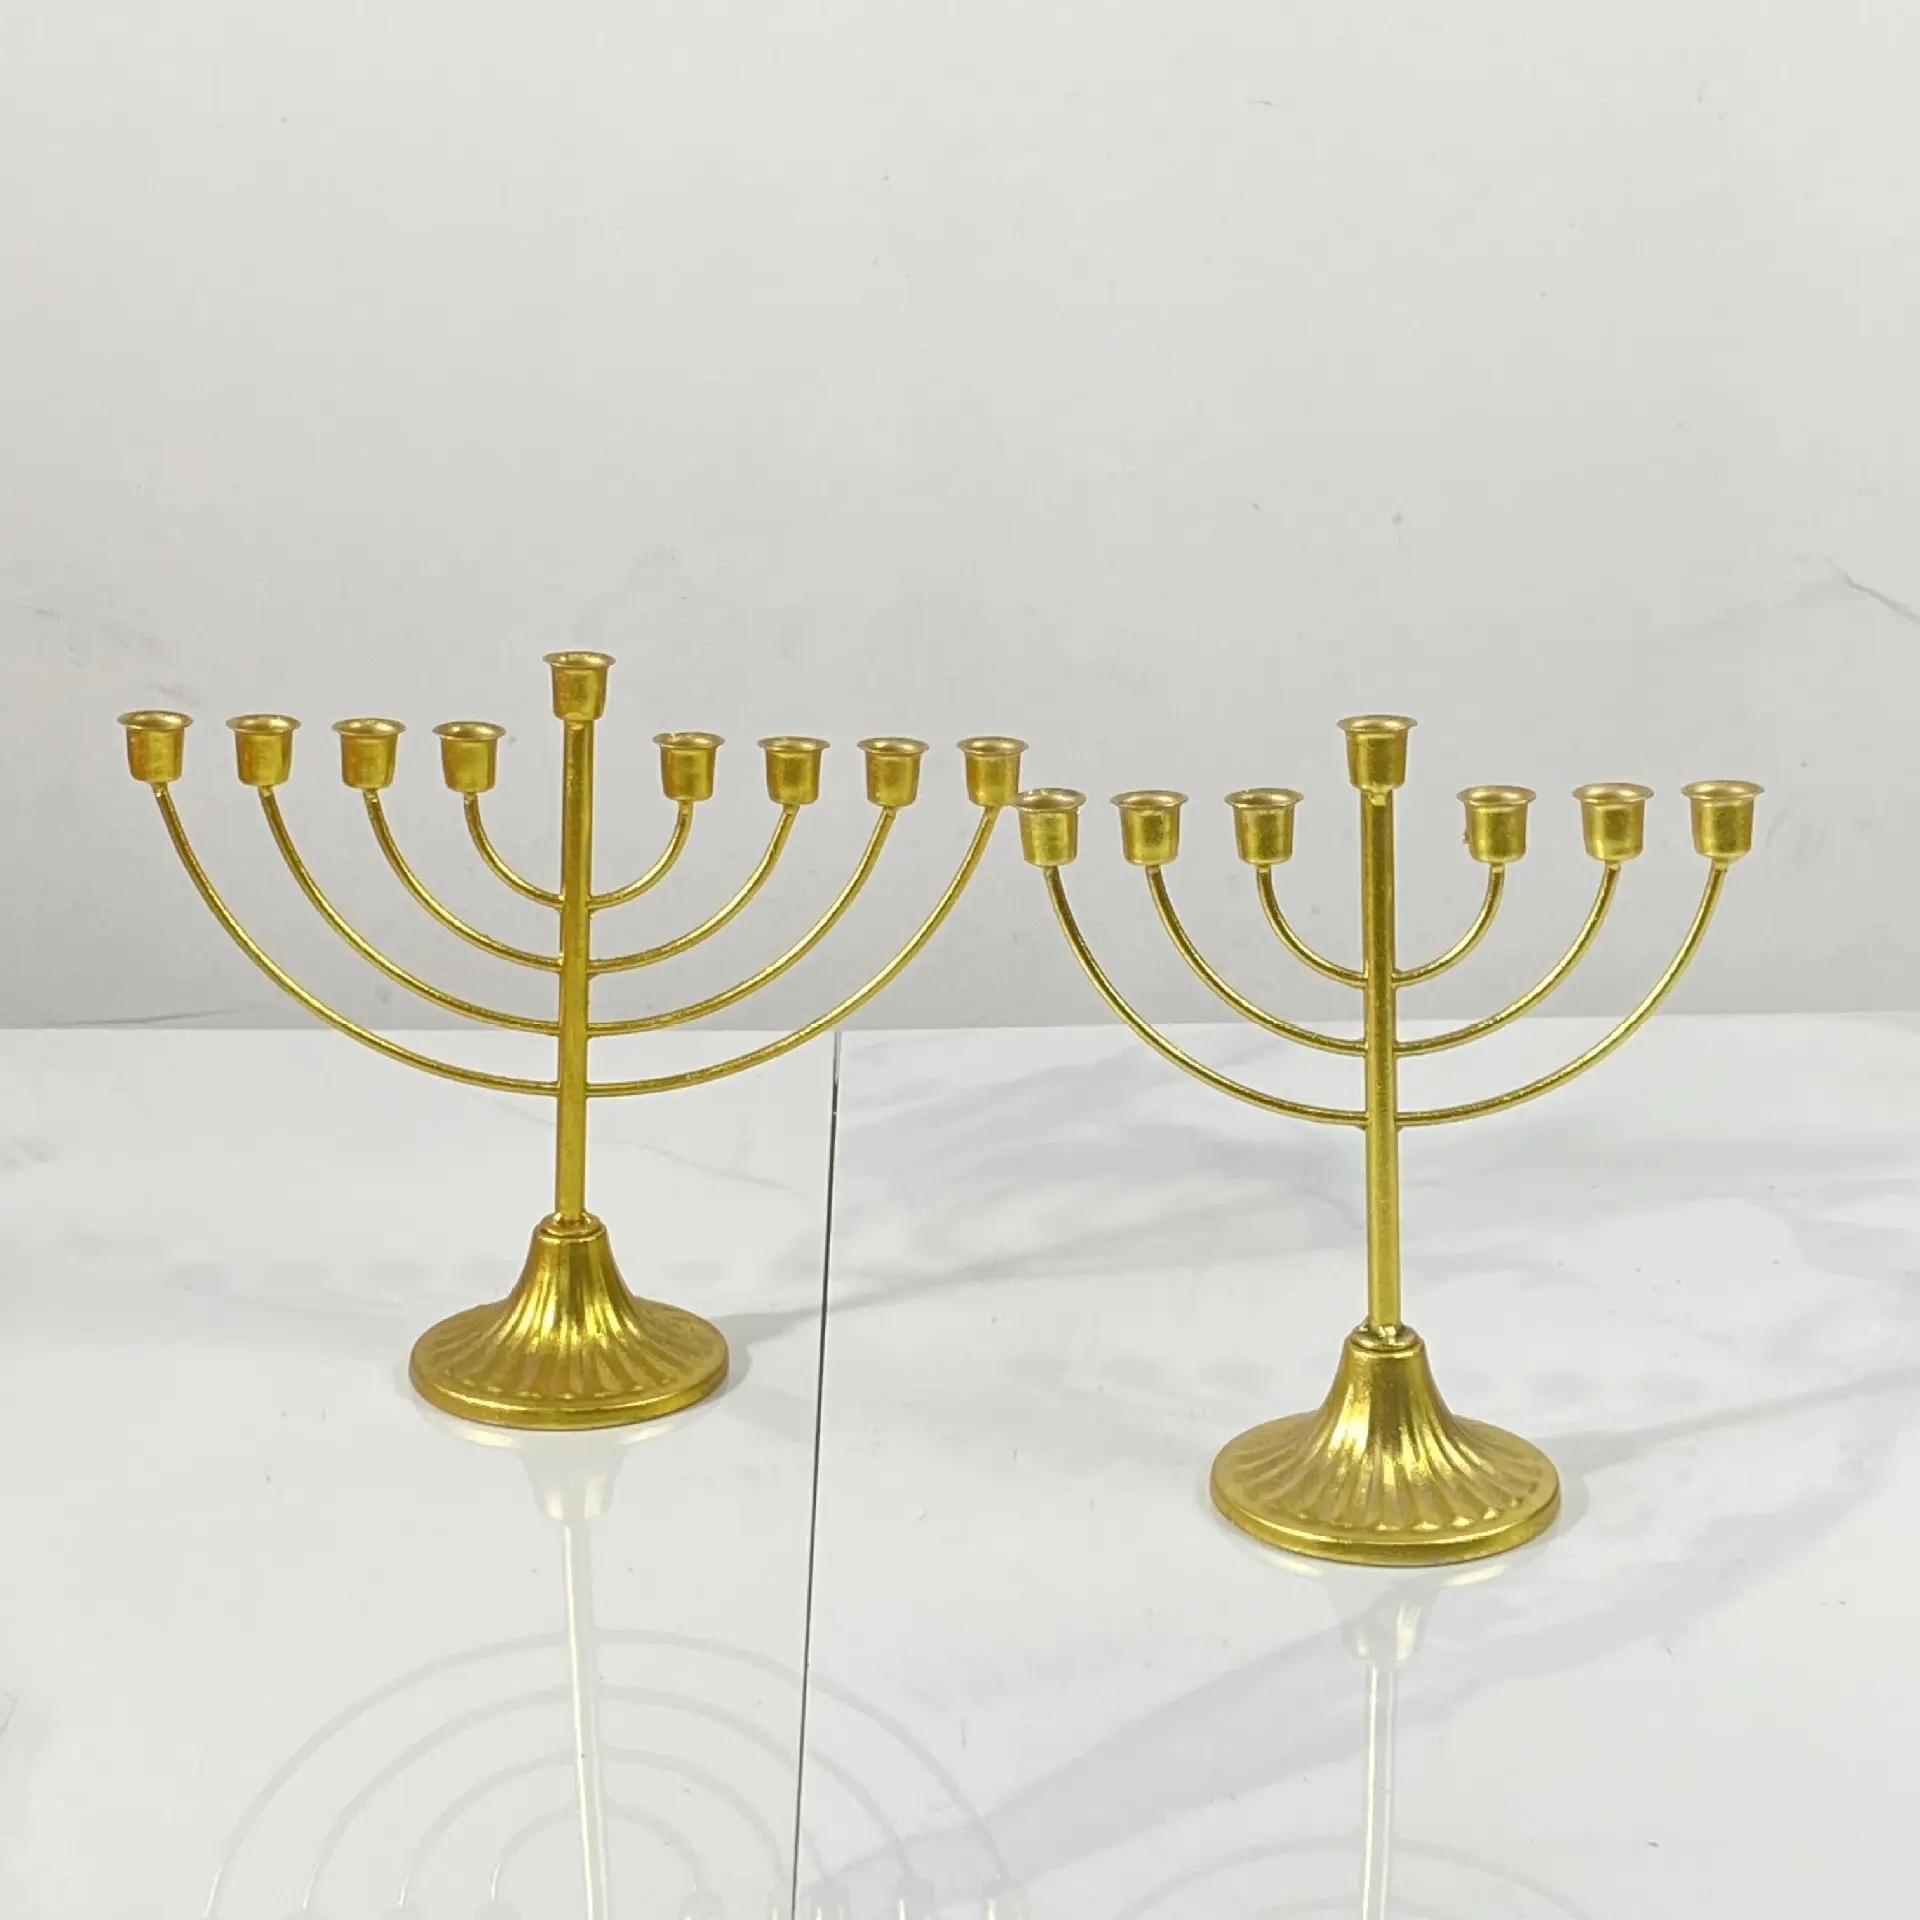 Minimalist Handmade7/9 kafa altın Metal şamdan Hanukkah Menorah 9 şube mumluk